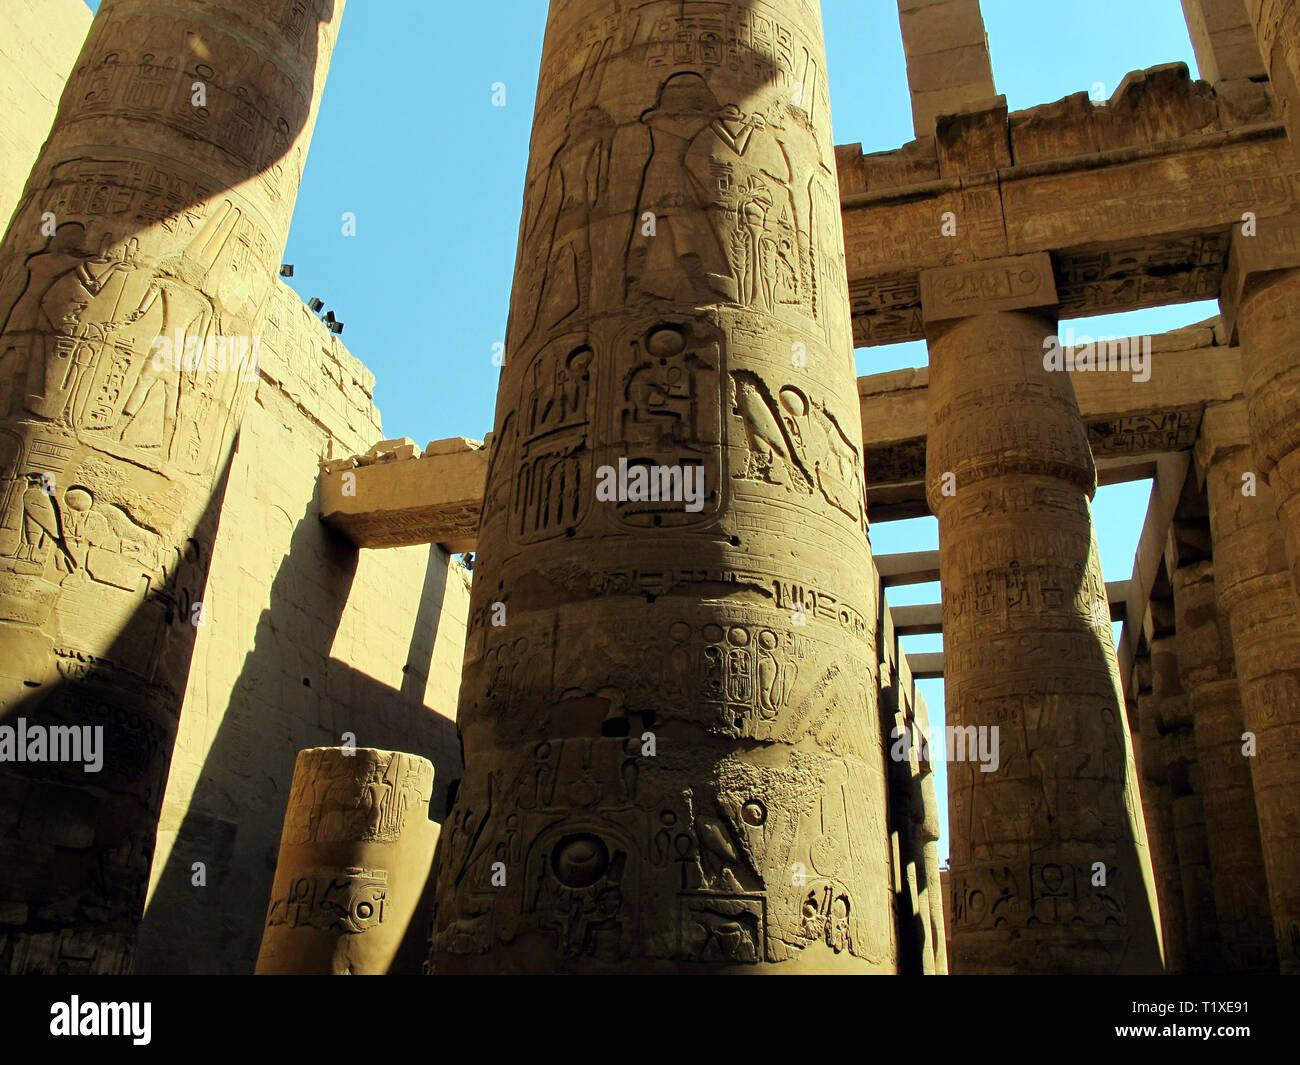 Ägypten, Luxor - 26.07.2010: Zentrale Kolonnade des Tempels von Karnak in Luxor. Historische Monumente der Antike. Sehenswürdigkeiten von Ägypten. Luxor. Stockfoto